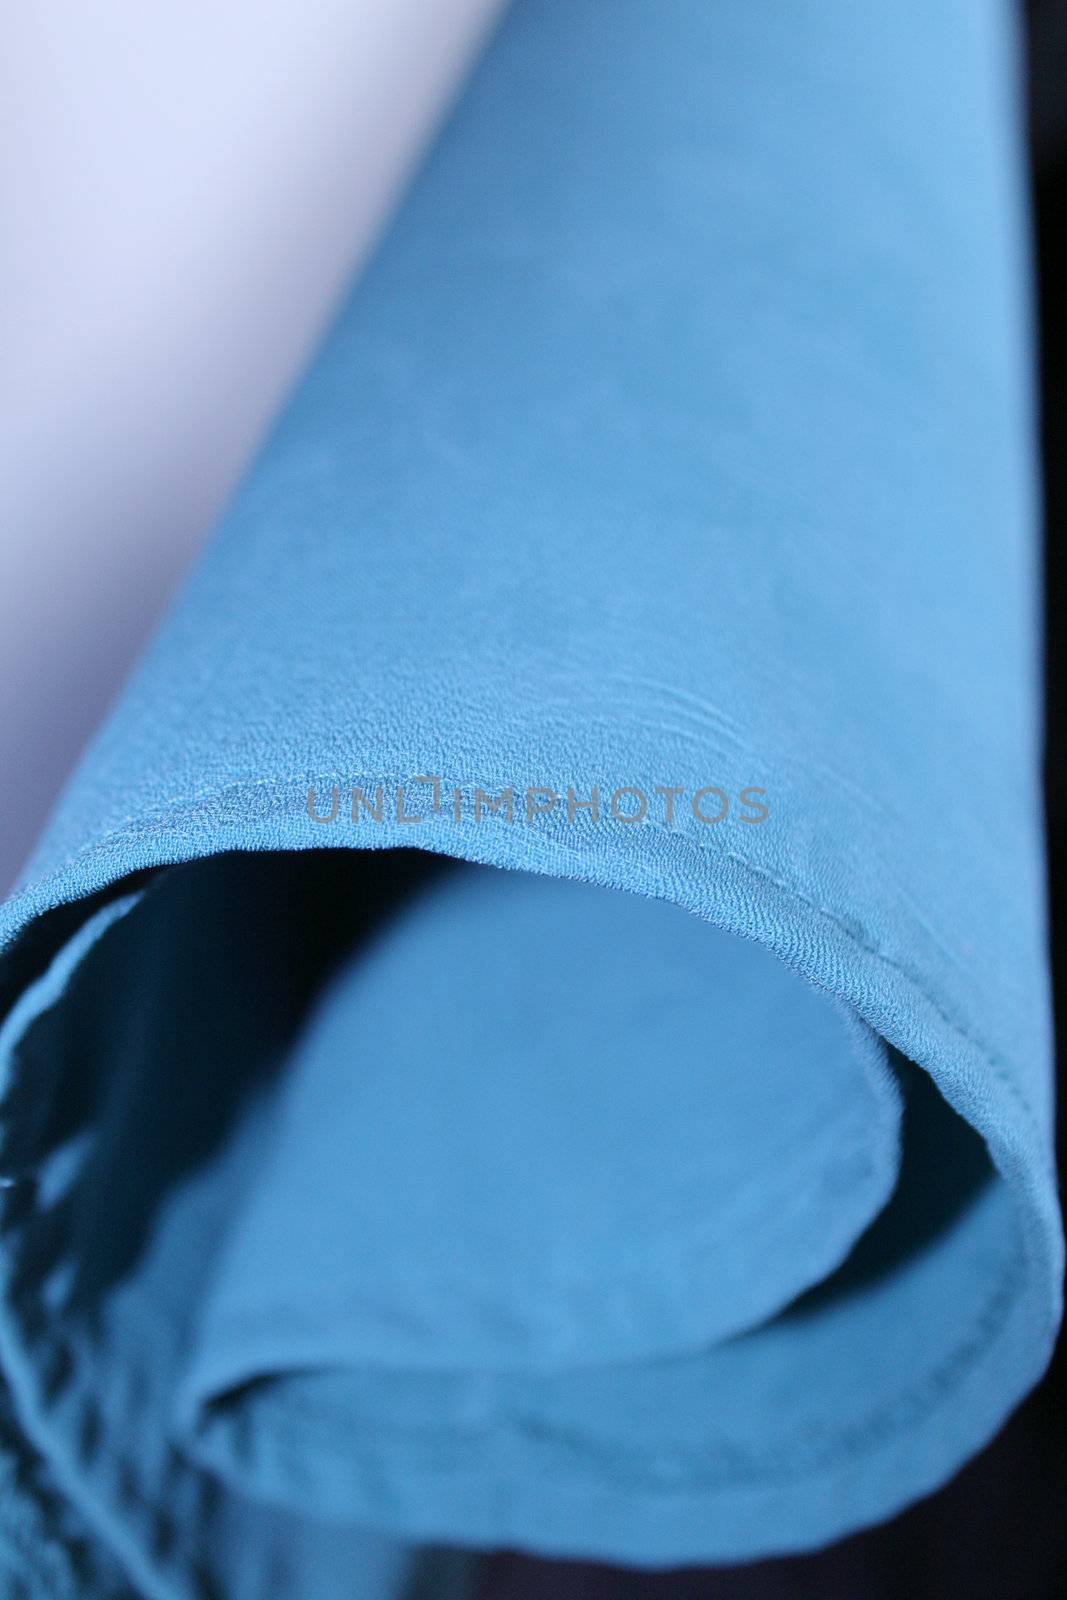 Closeup of blue cloth